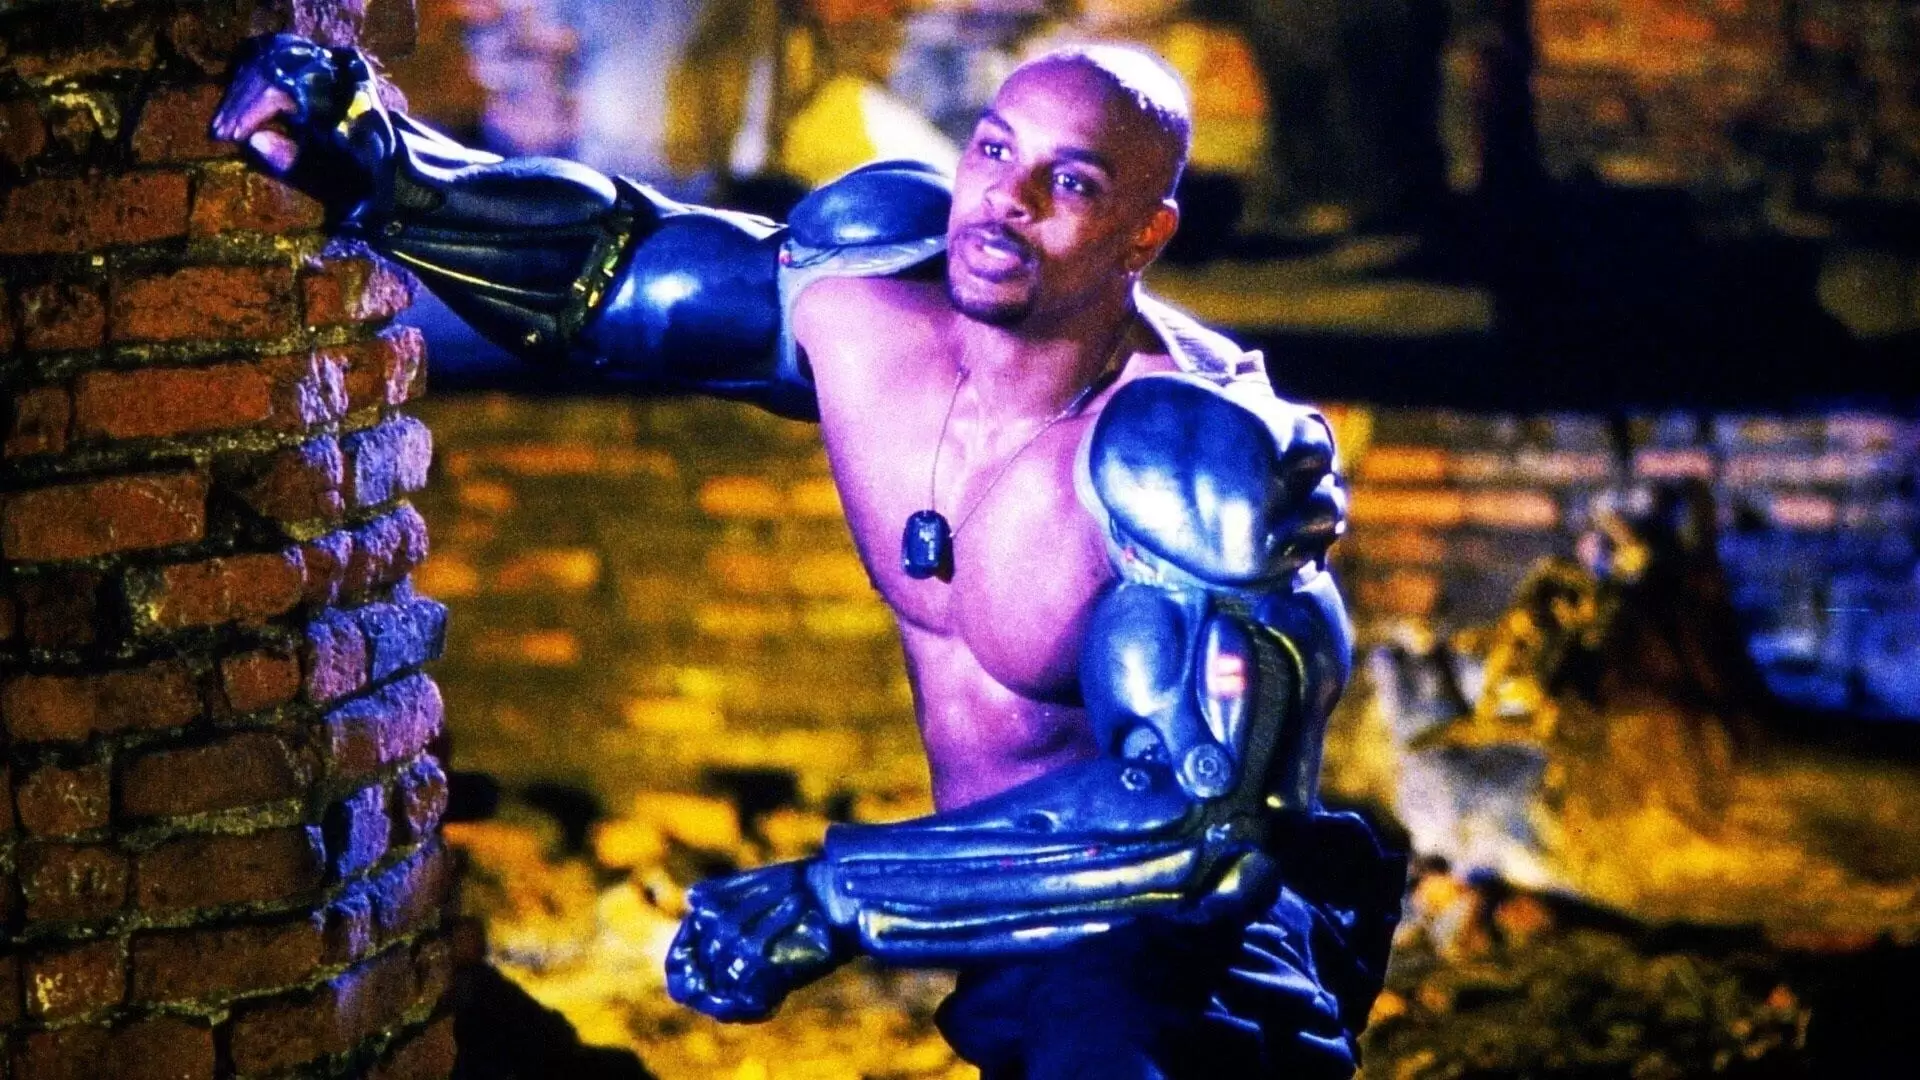 دانلود فیلم Mortal Kombat: Annihilation 1997 (مورتال کامبت: نابودی) با زیرنویس فارسی و تماشای آنلاین